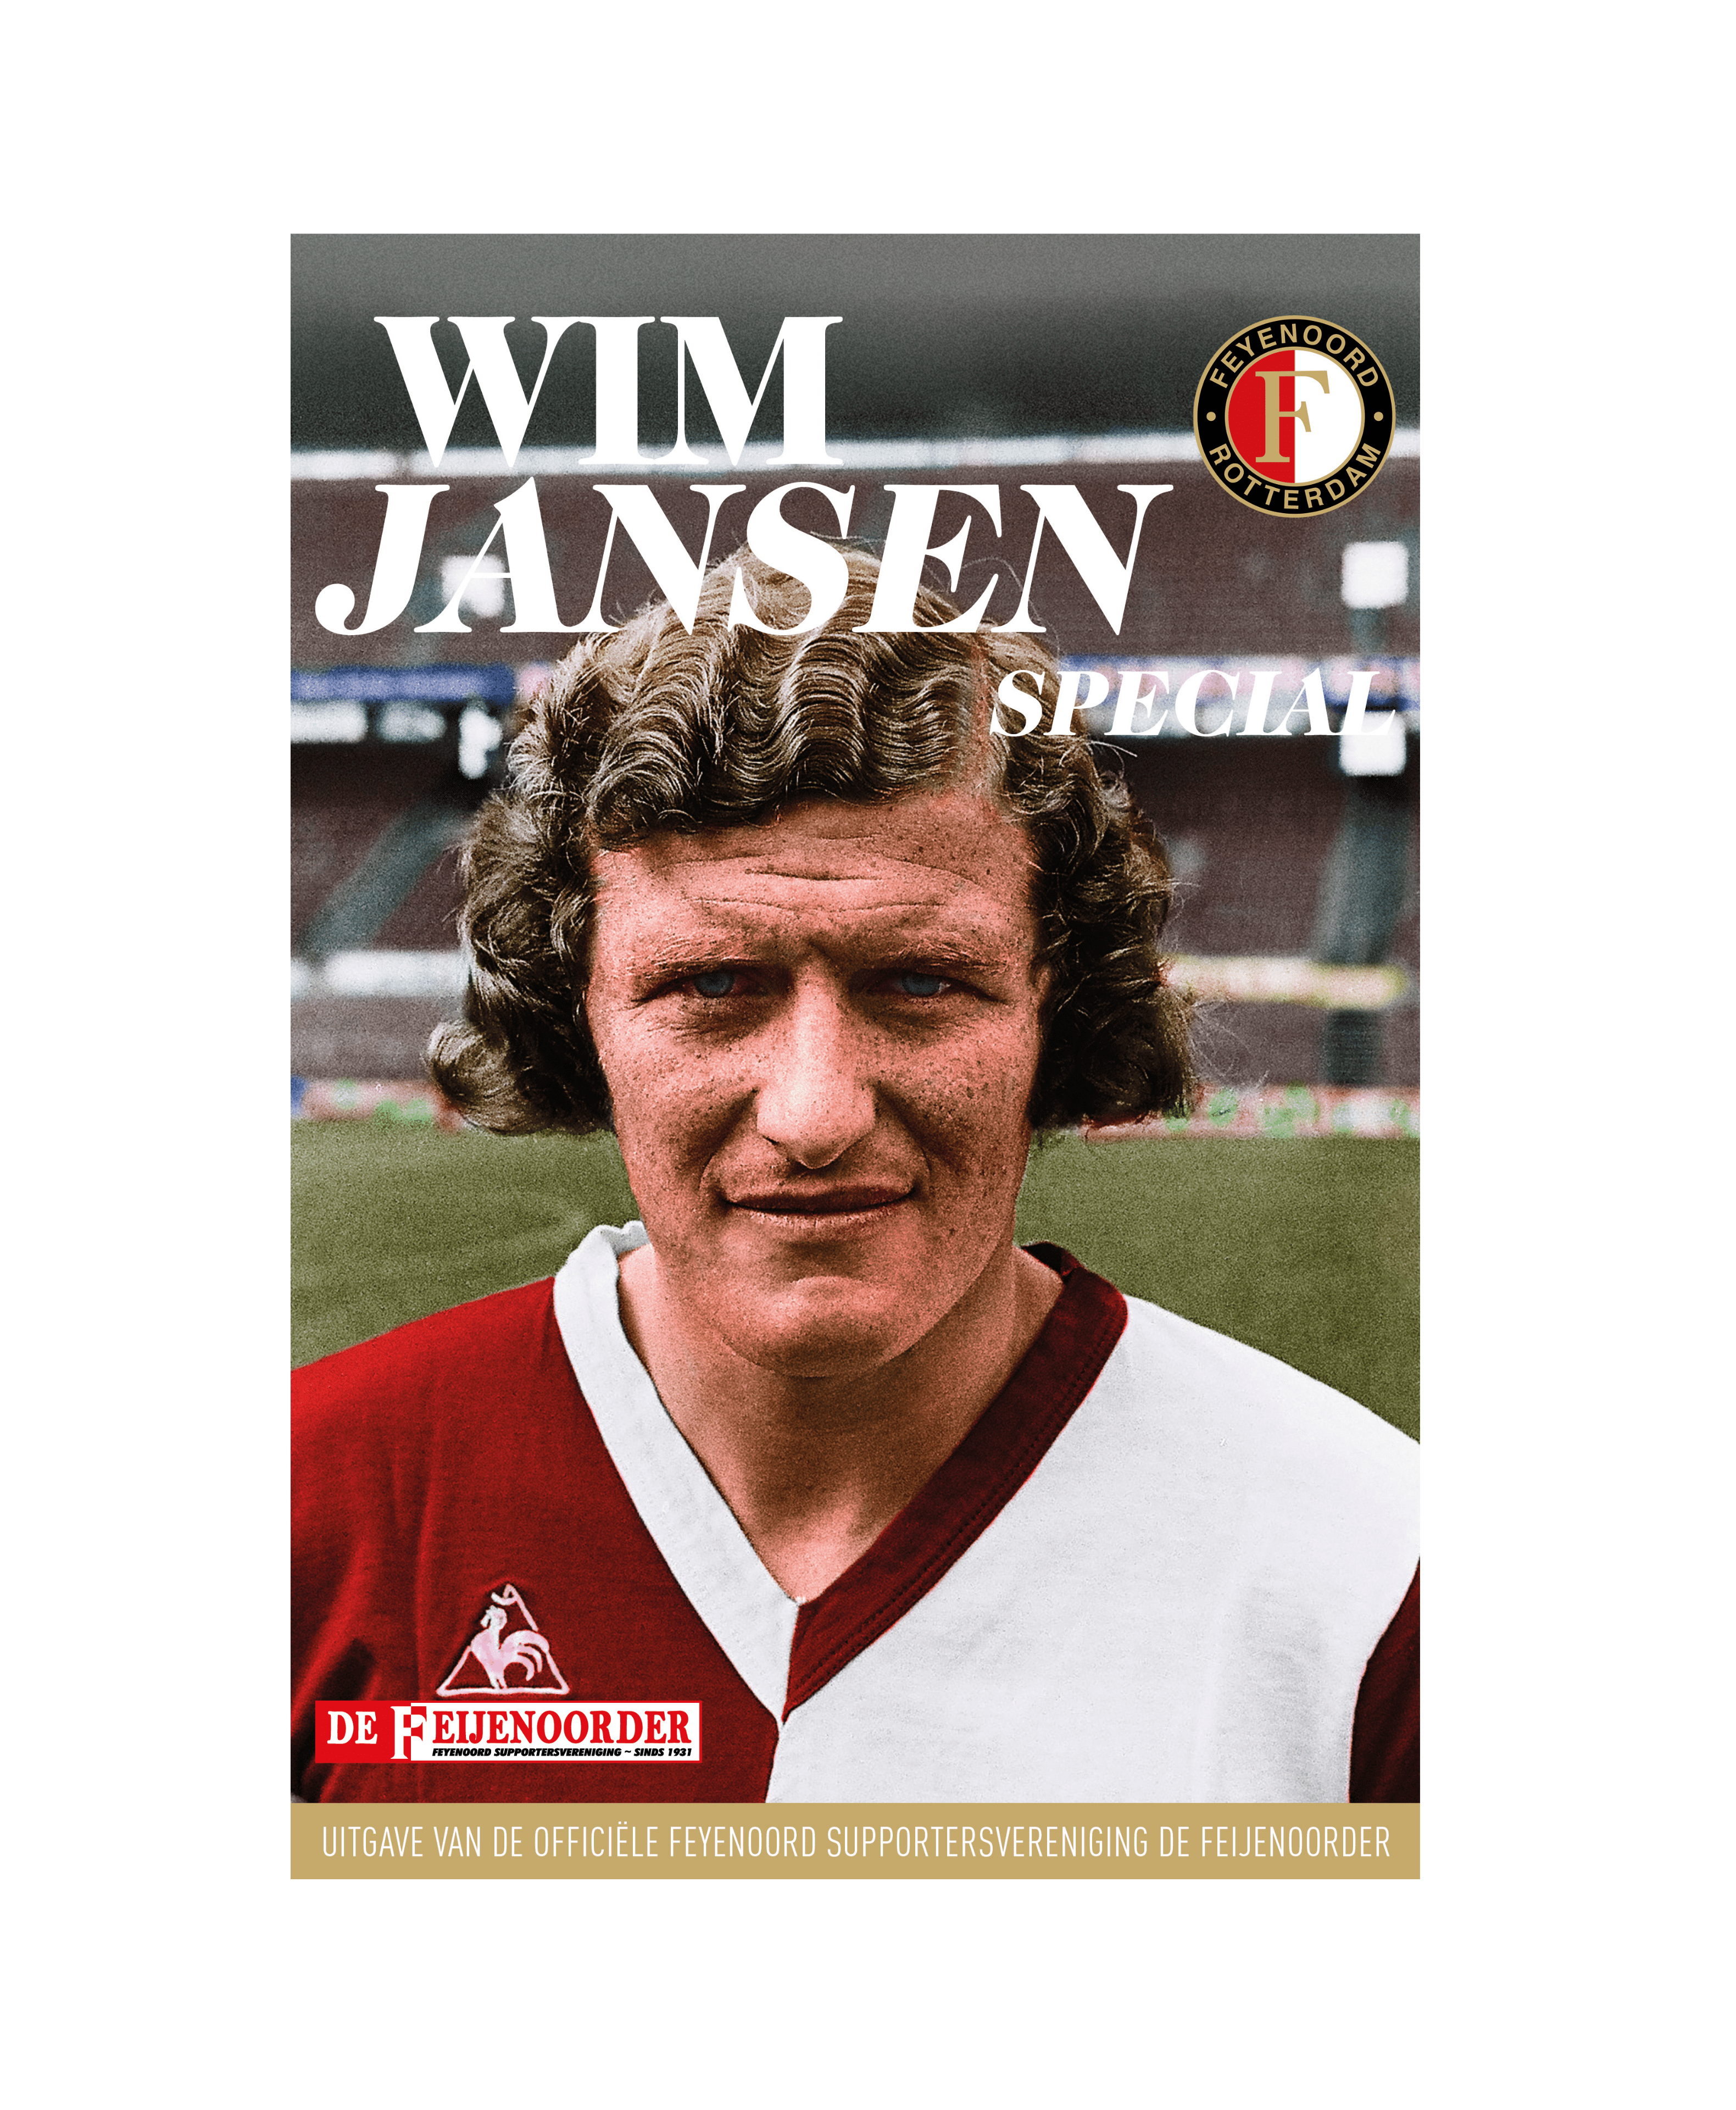 Wim Jansen special